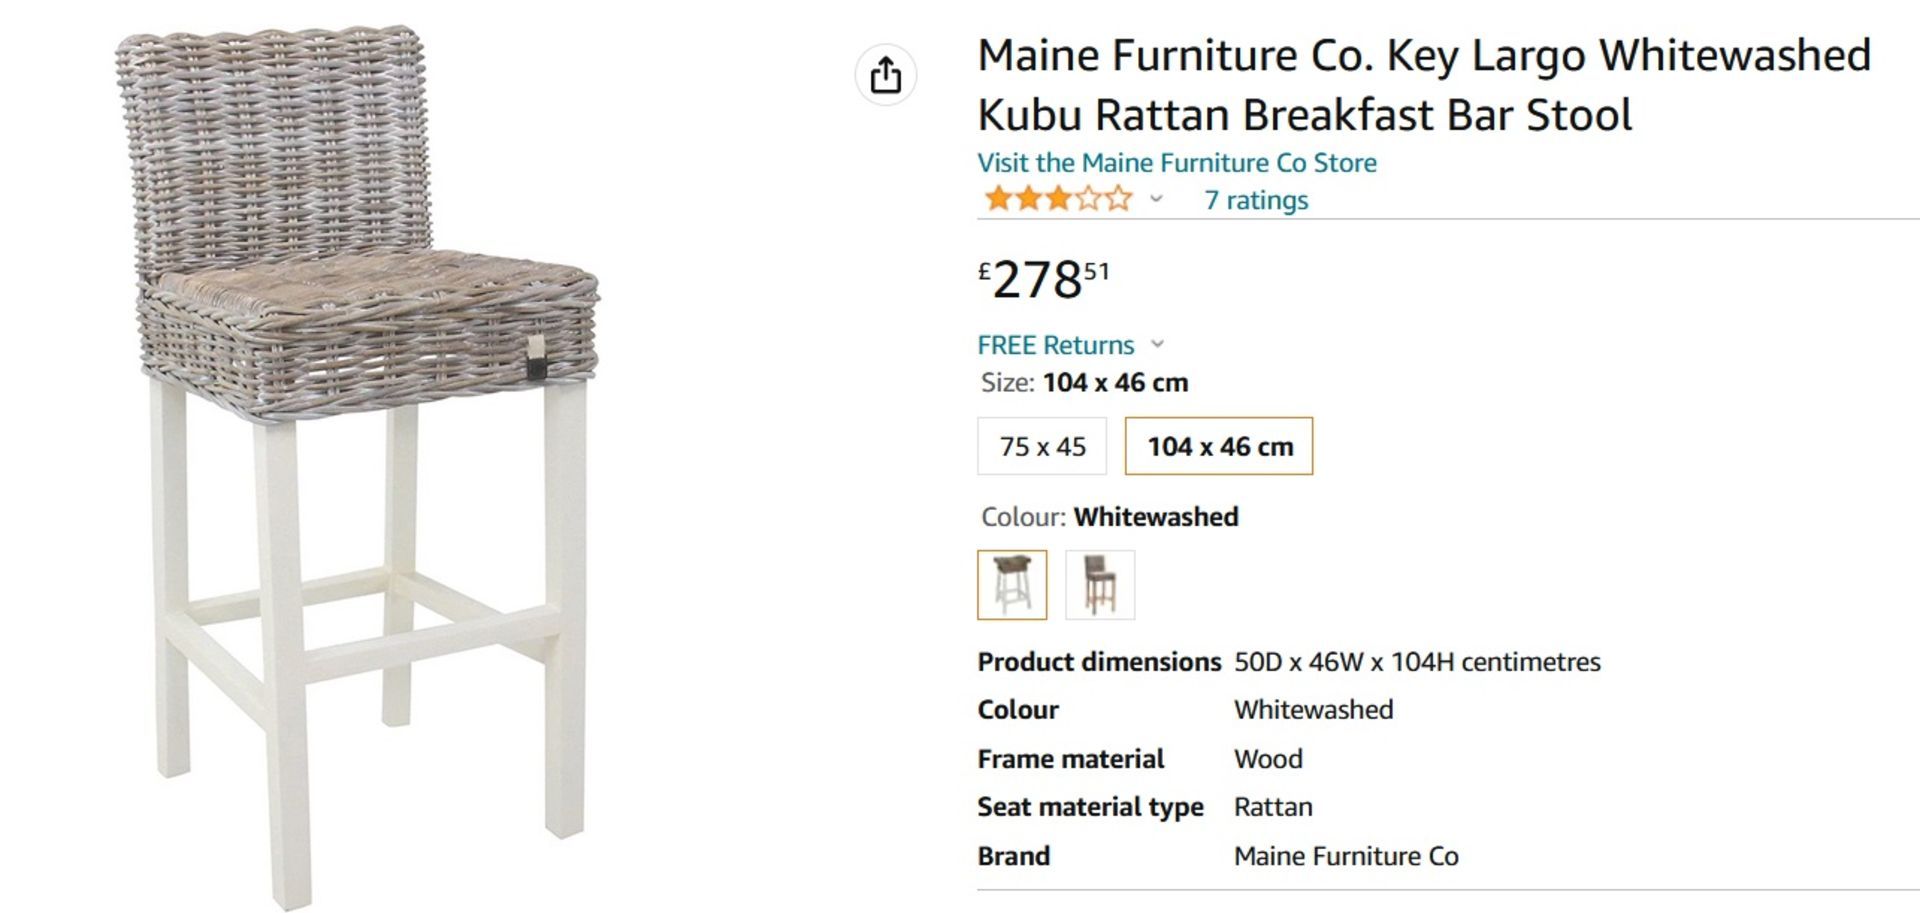 NEW & BOXED 2x Maine Furniture Co. Key Largo Whitewashed Kubu Rattan Breakfast Bar Stool. RRP £278. - Image 3 of 6